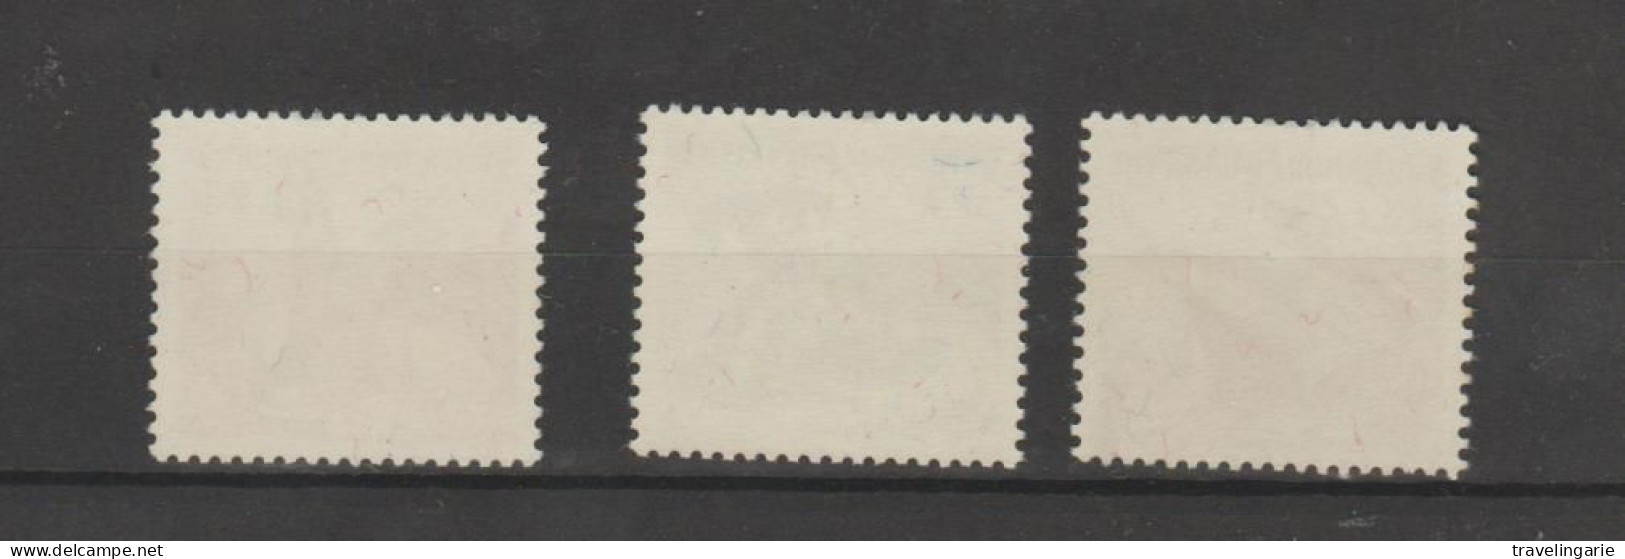 Liechtenstein 1950 Fauna (III) ** MNH - Unused Stamps